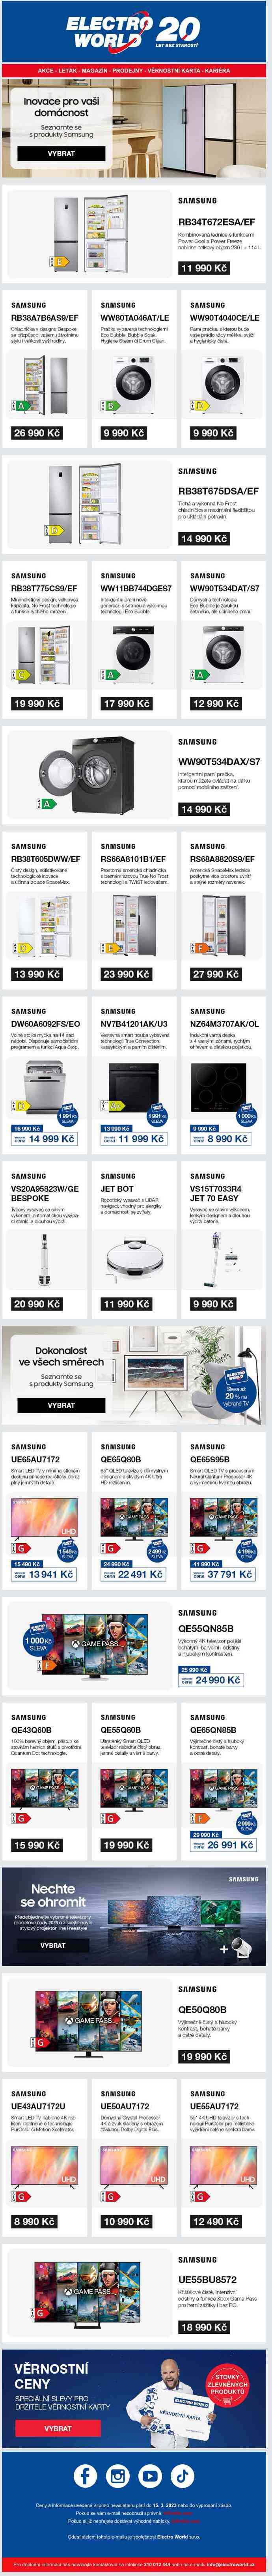 Seznamte se s produkty Samsung - inovací pro vaši domácnost.